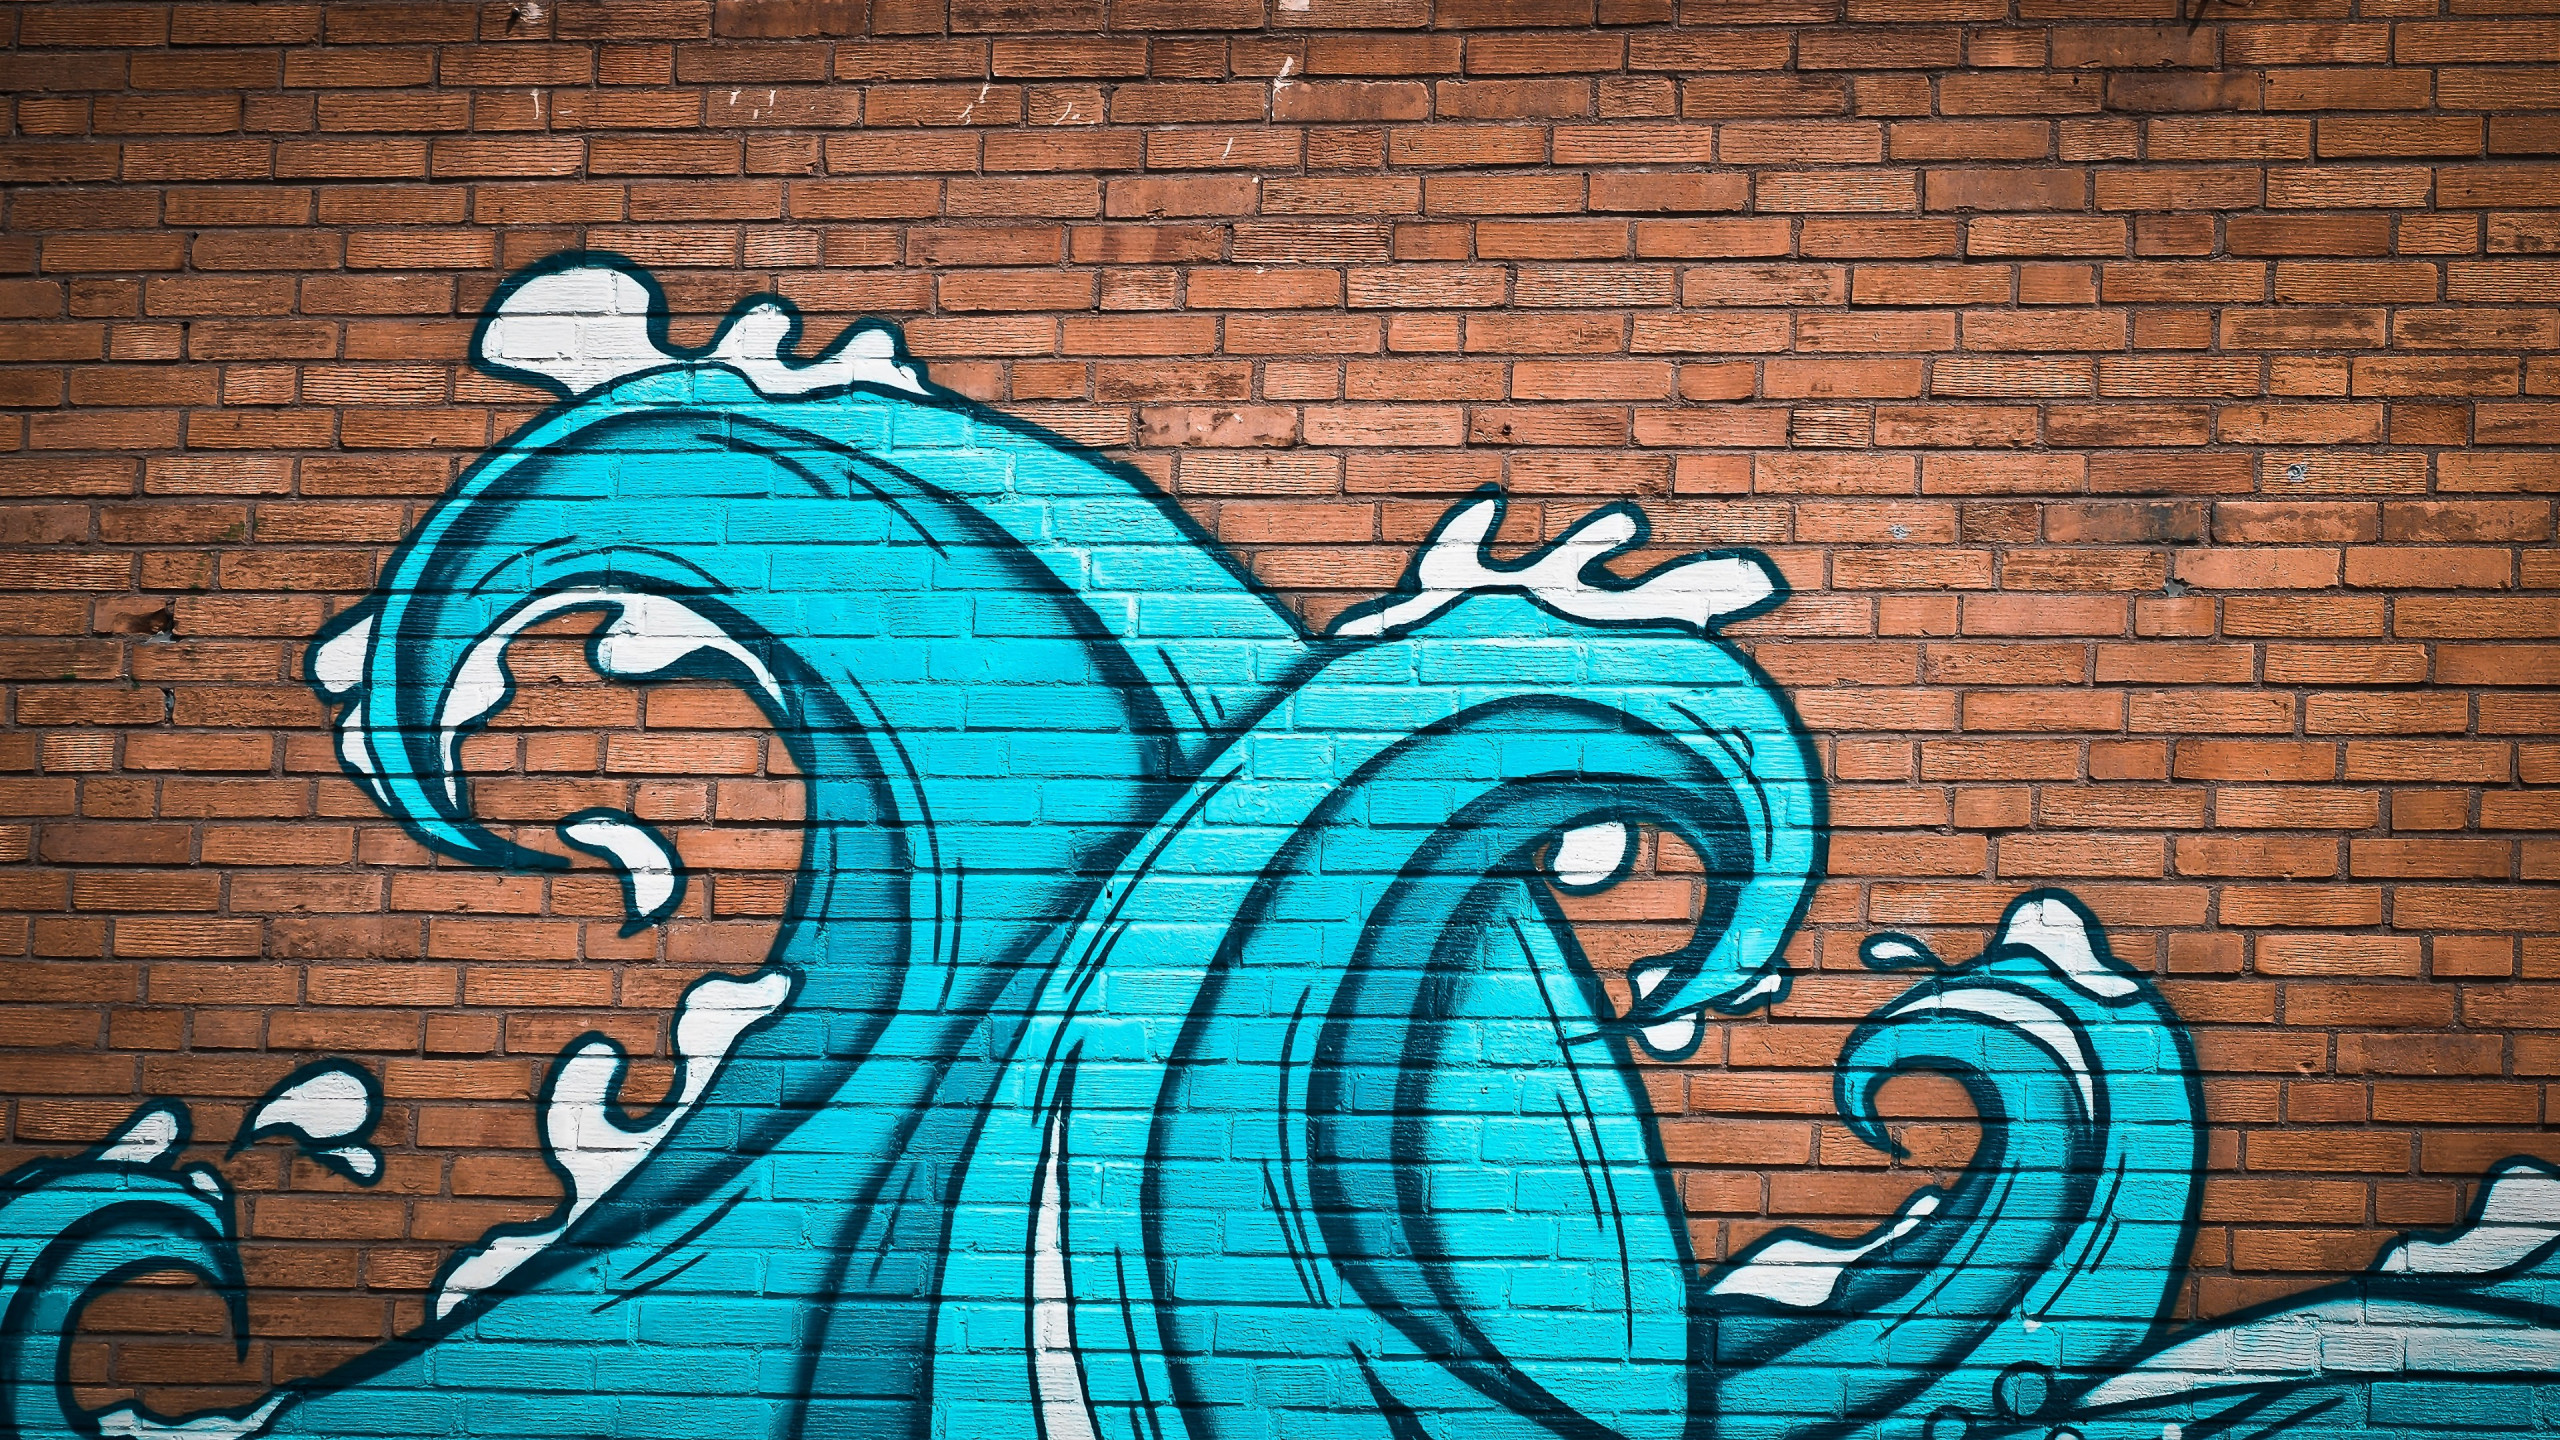 Graffiti Waves On Brick Wall Wallpaper - Graffiti Wall - HD Wallpaper 